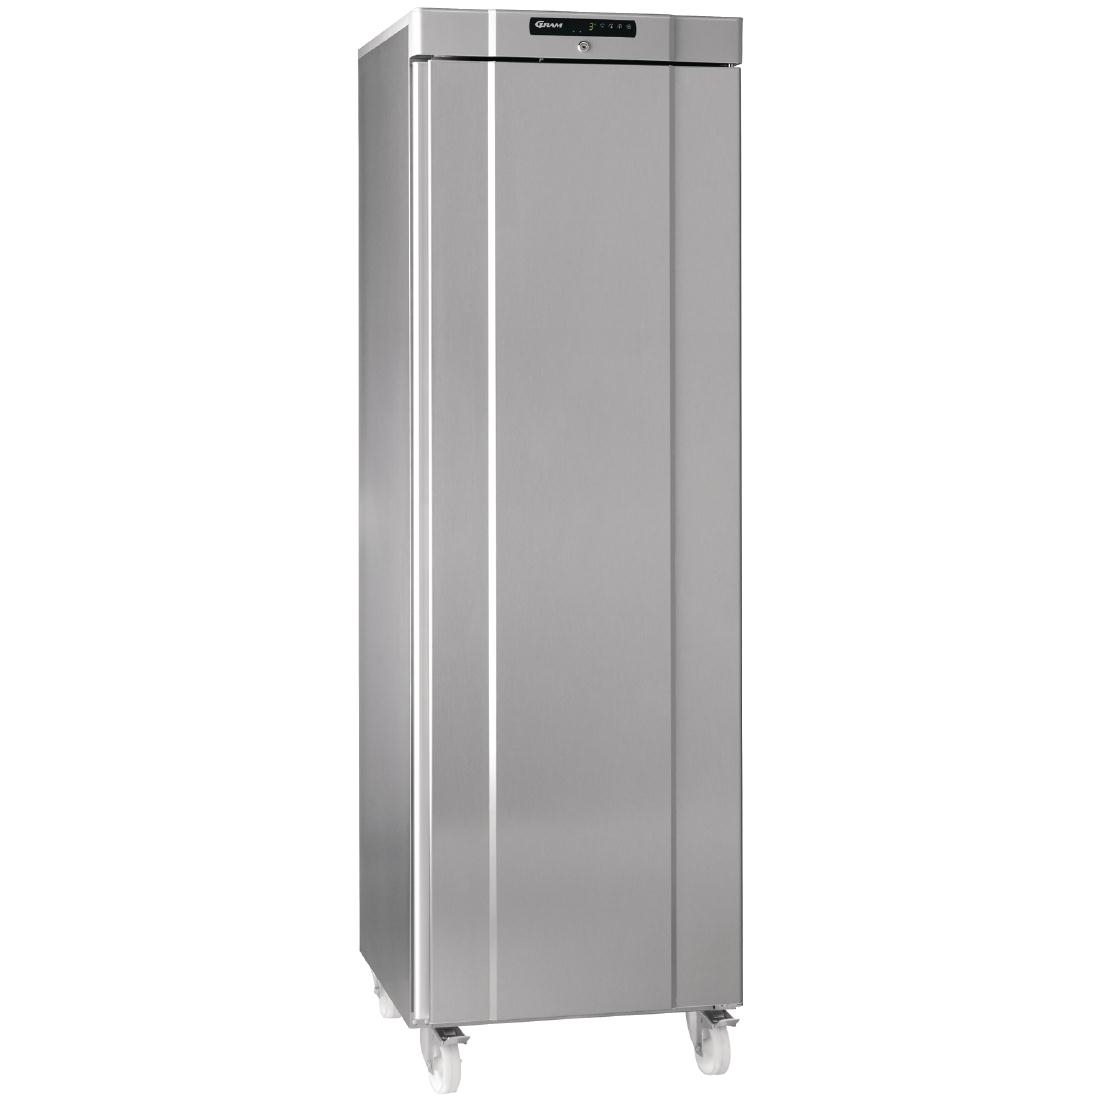 Gram Compact 1 Door 346Ltr Cabinet Freezer F410 RG C 6N